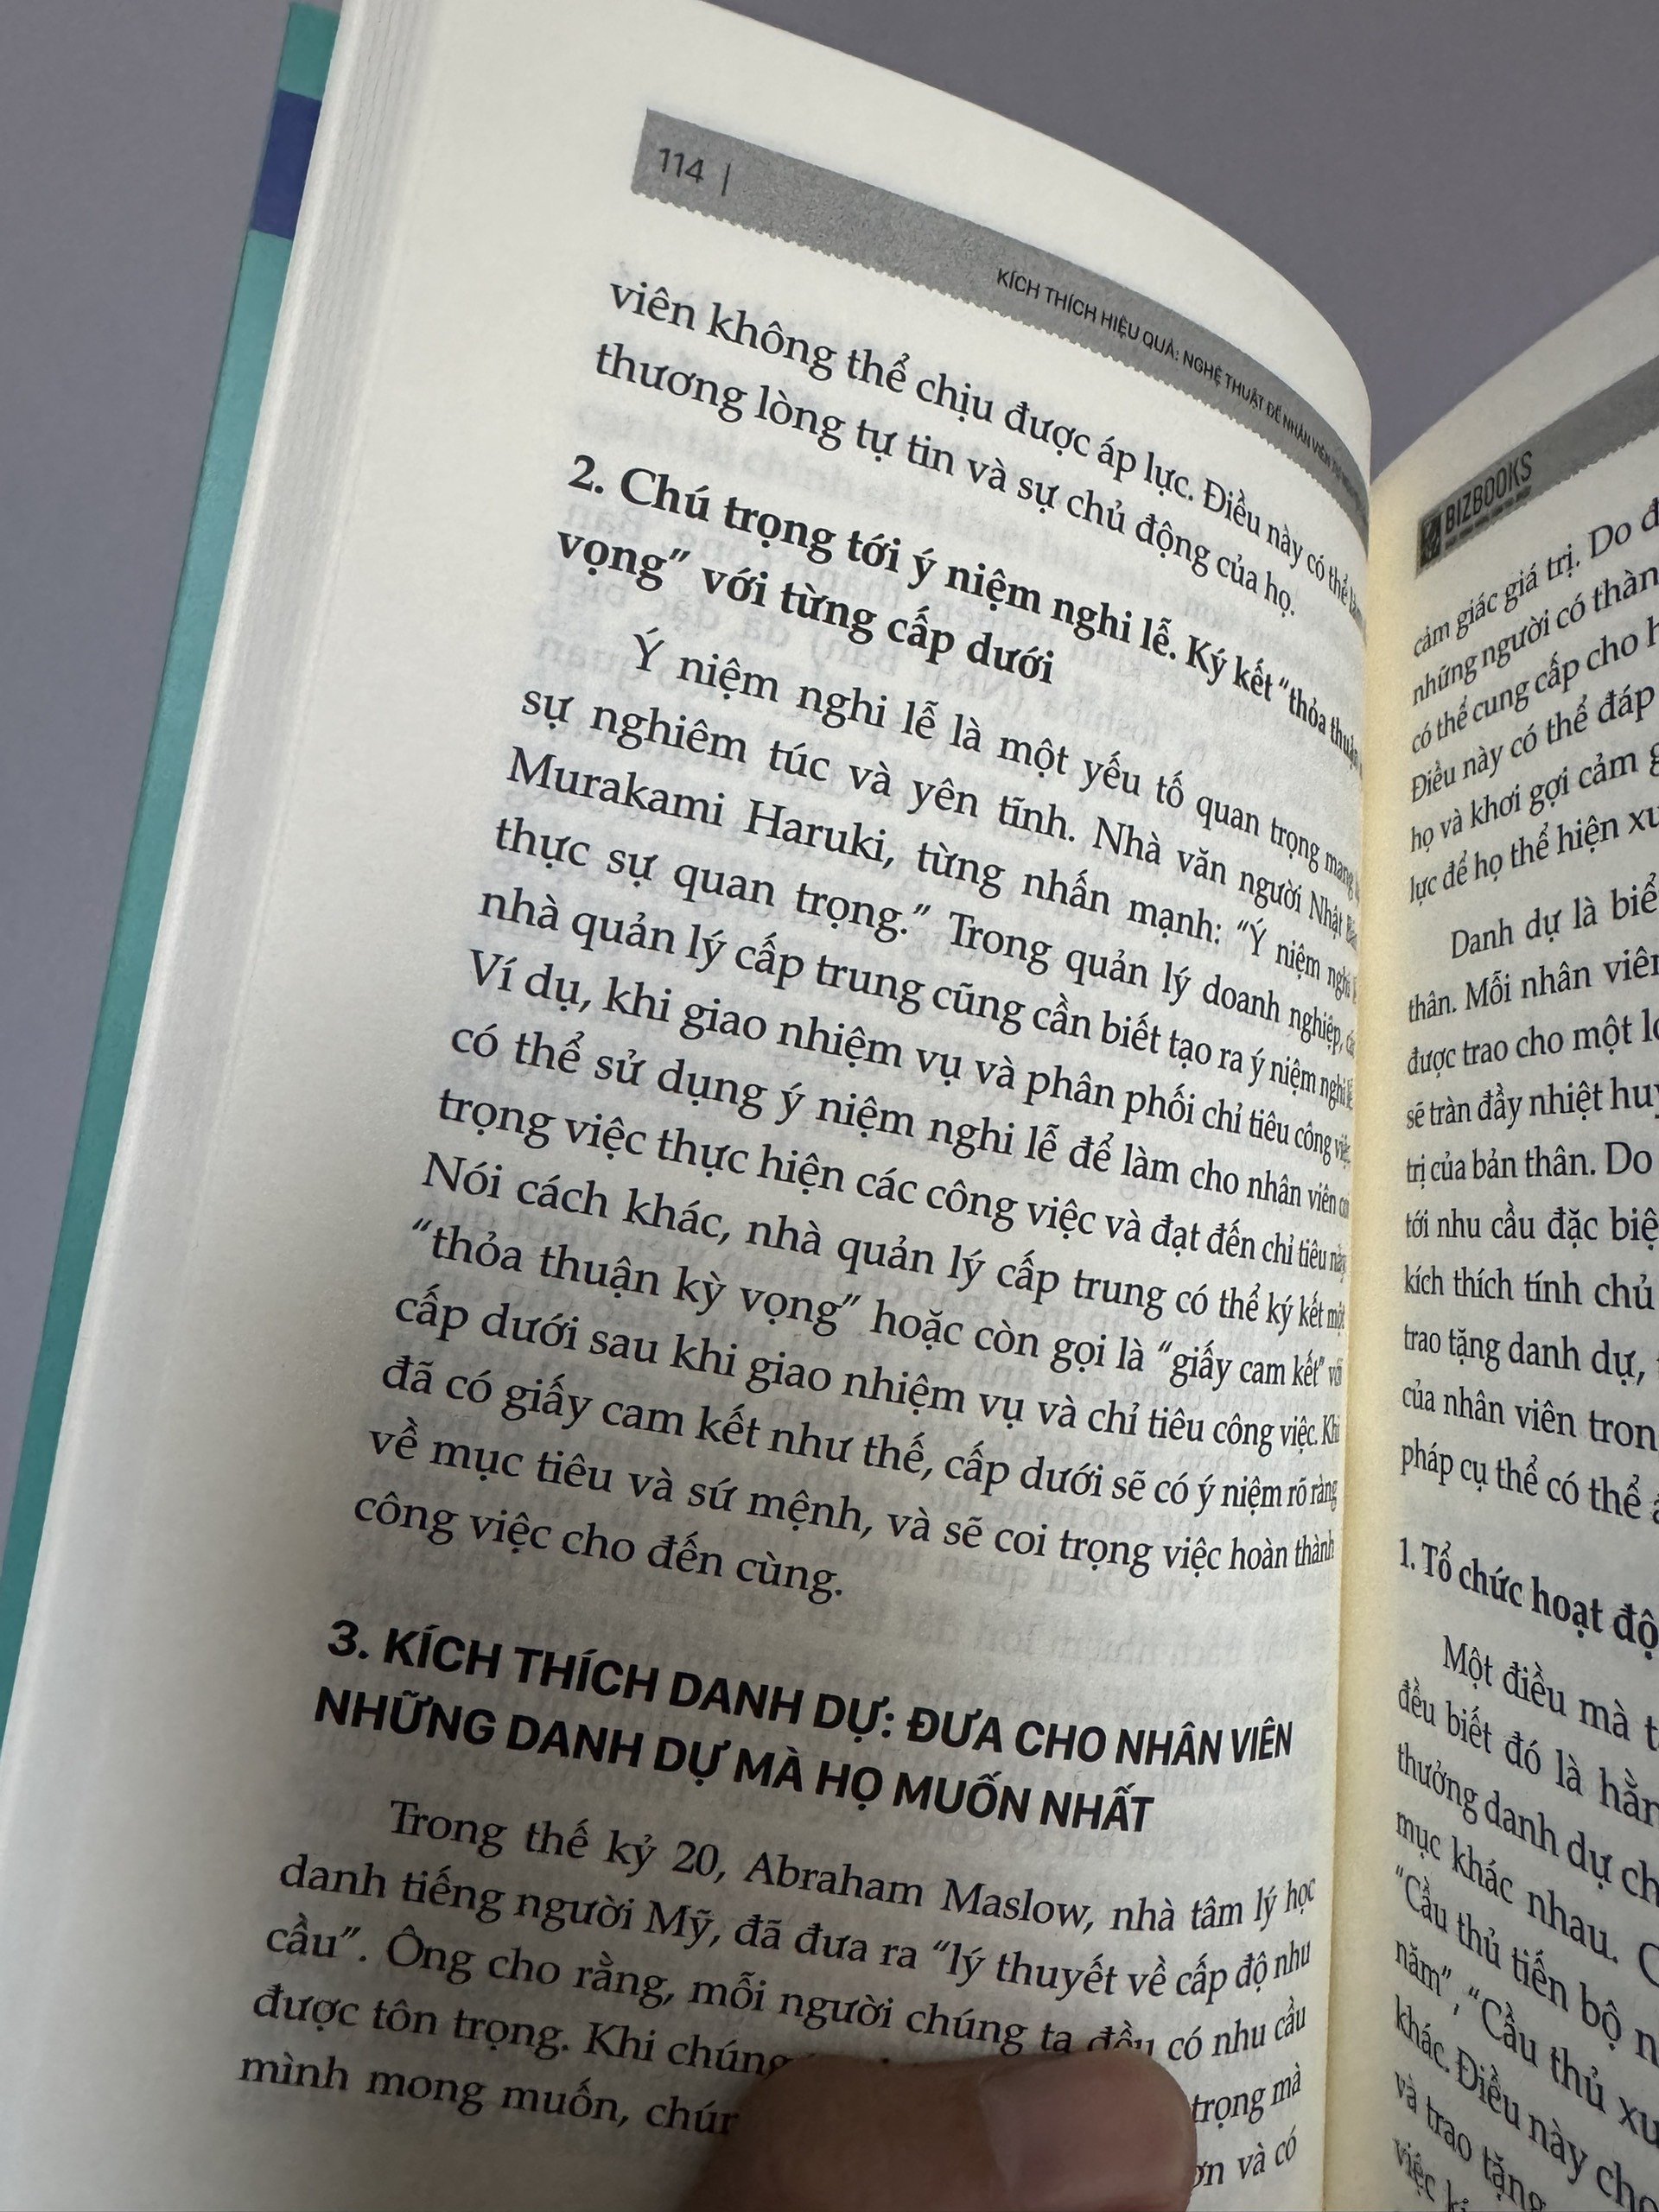 NHÀ QUẢN LÝ CẤP TRUNG: MẮT XÍCH SỐNG CÒN CỦA DOANH NGHIỆP – Đường Văn Quân – Bizbooks - NXB Hồng Đức